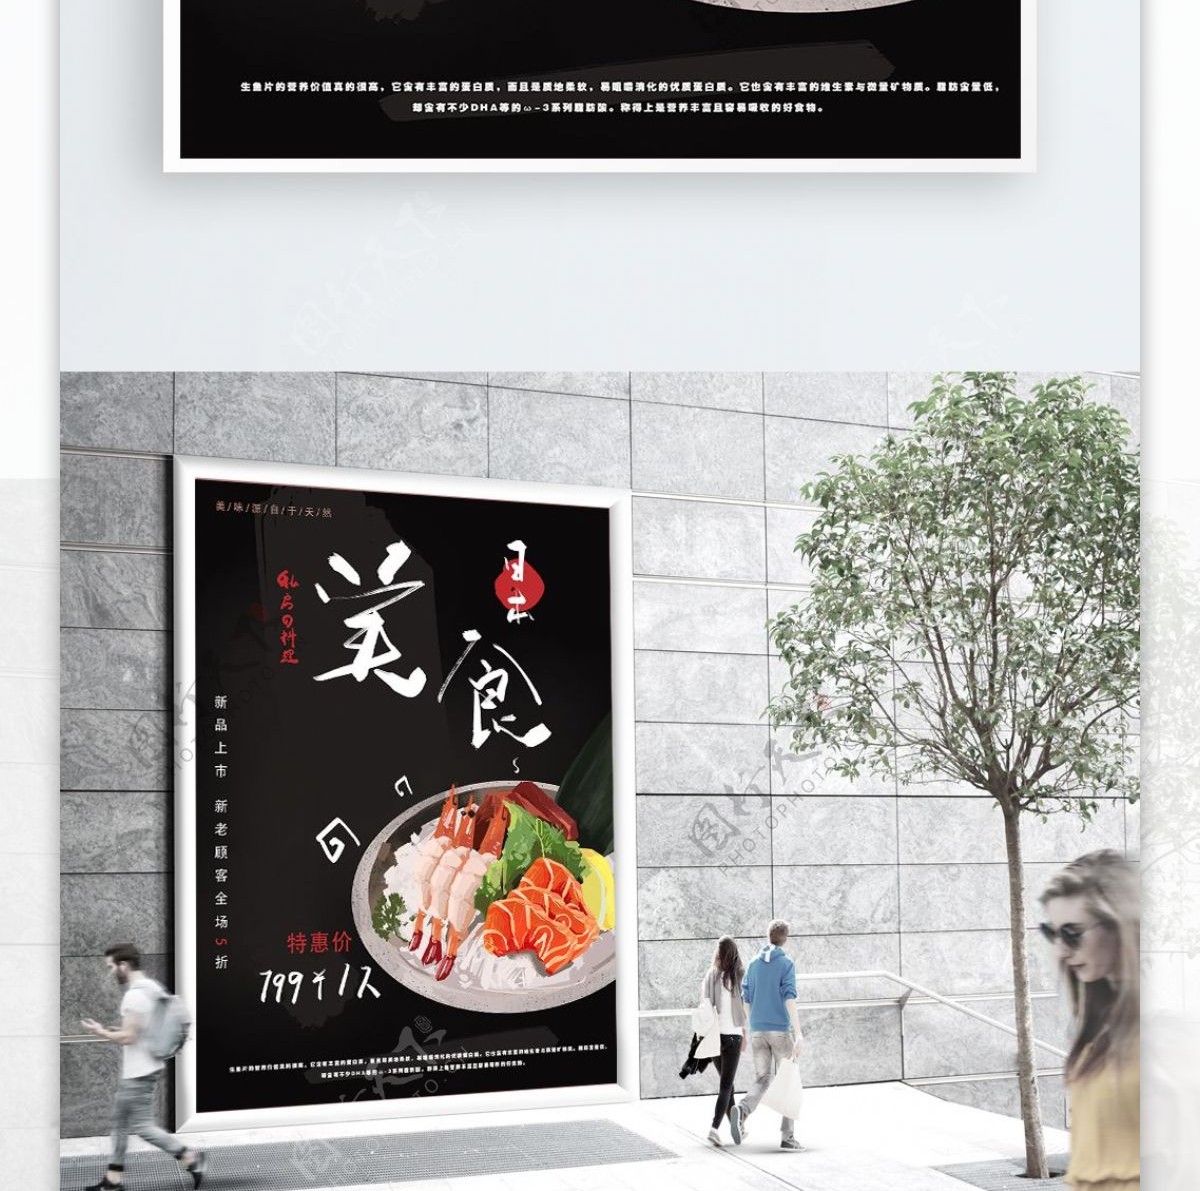 原创手绘日本美食海报